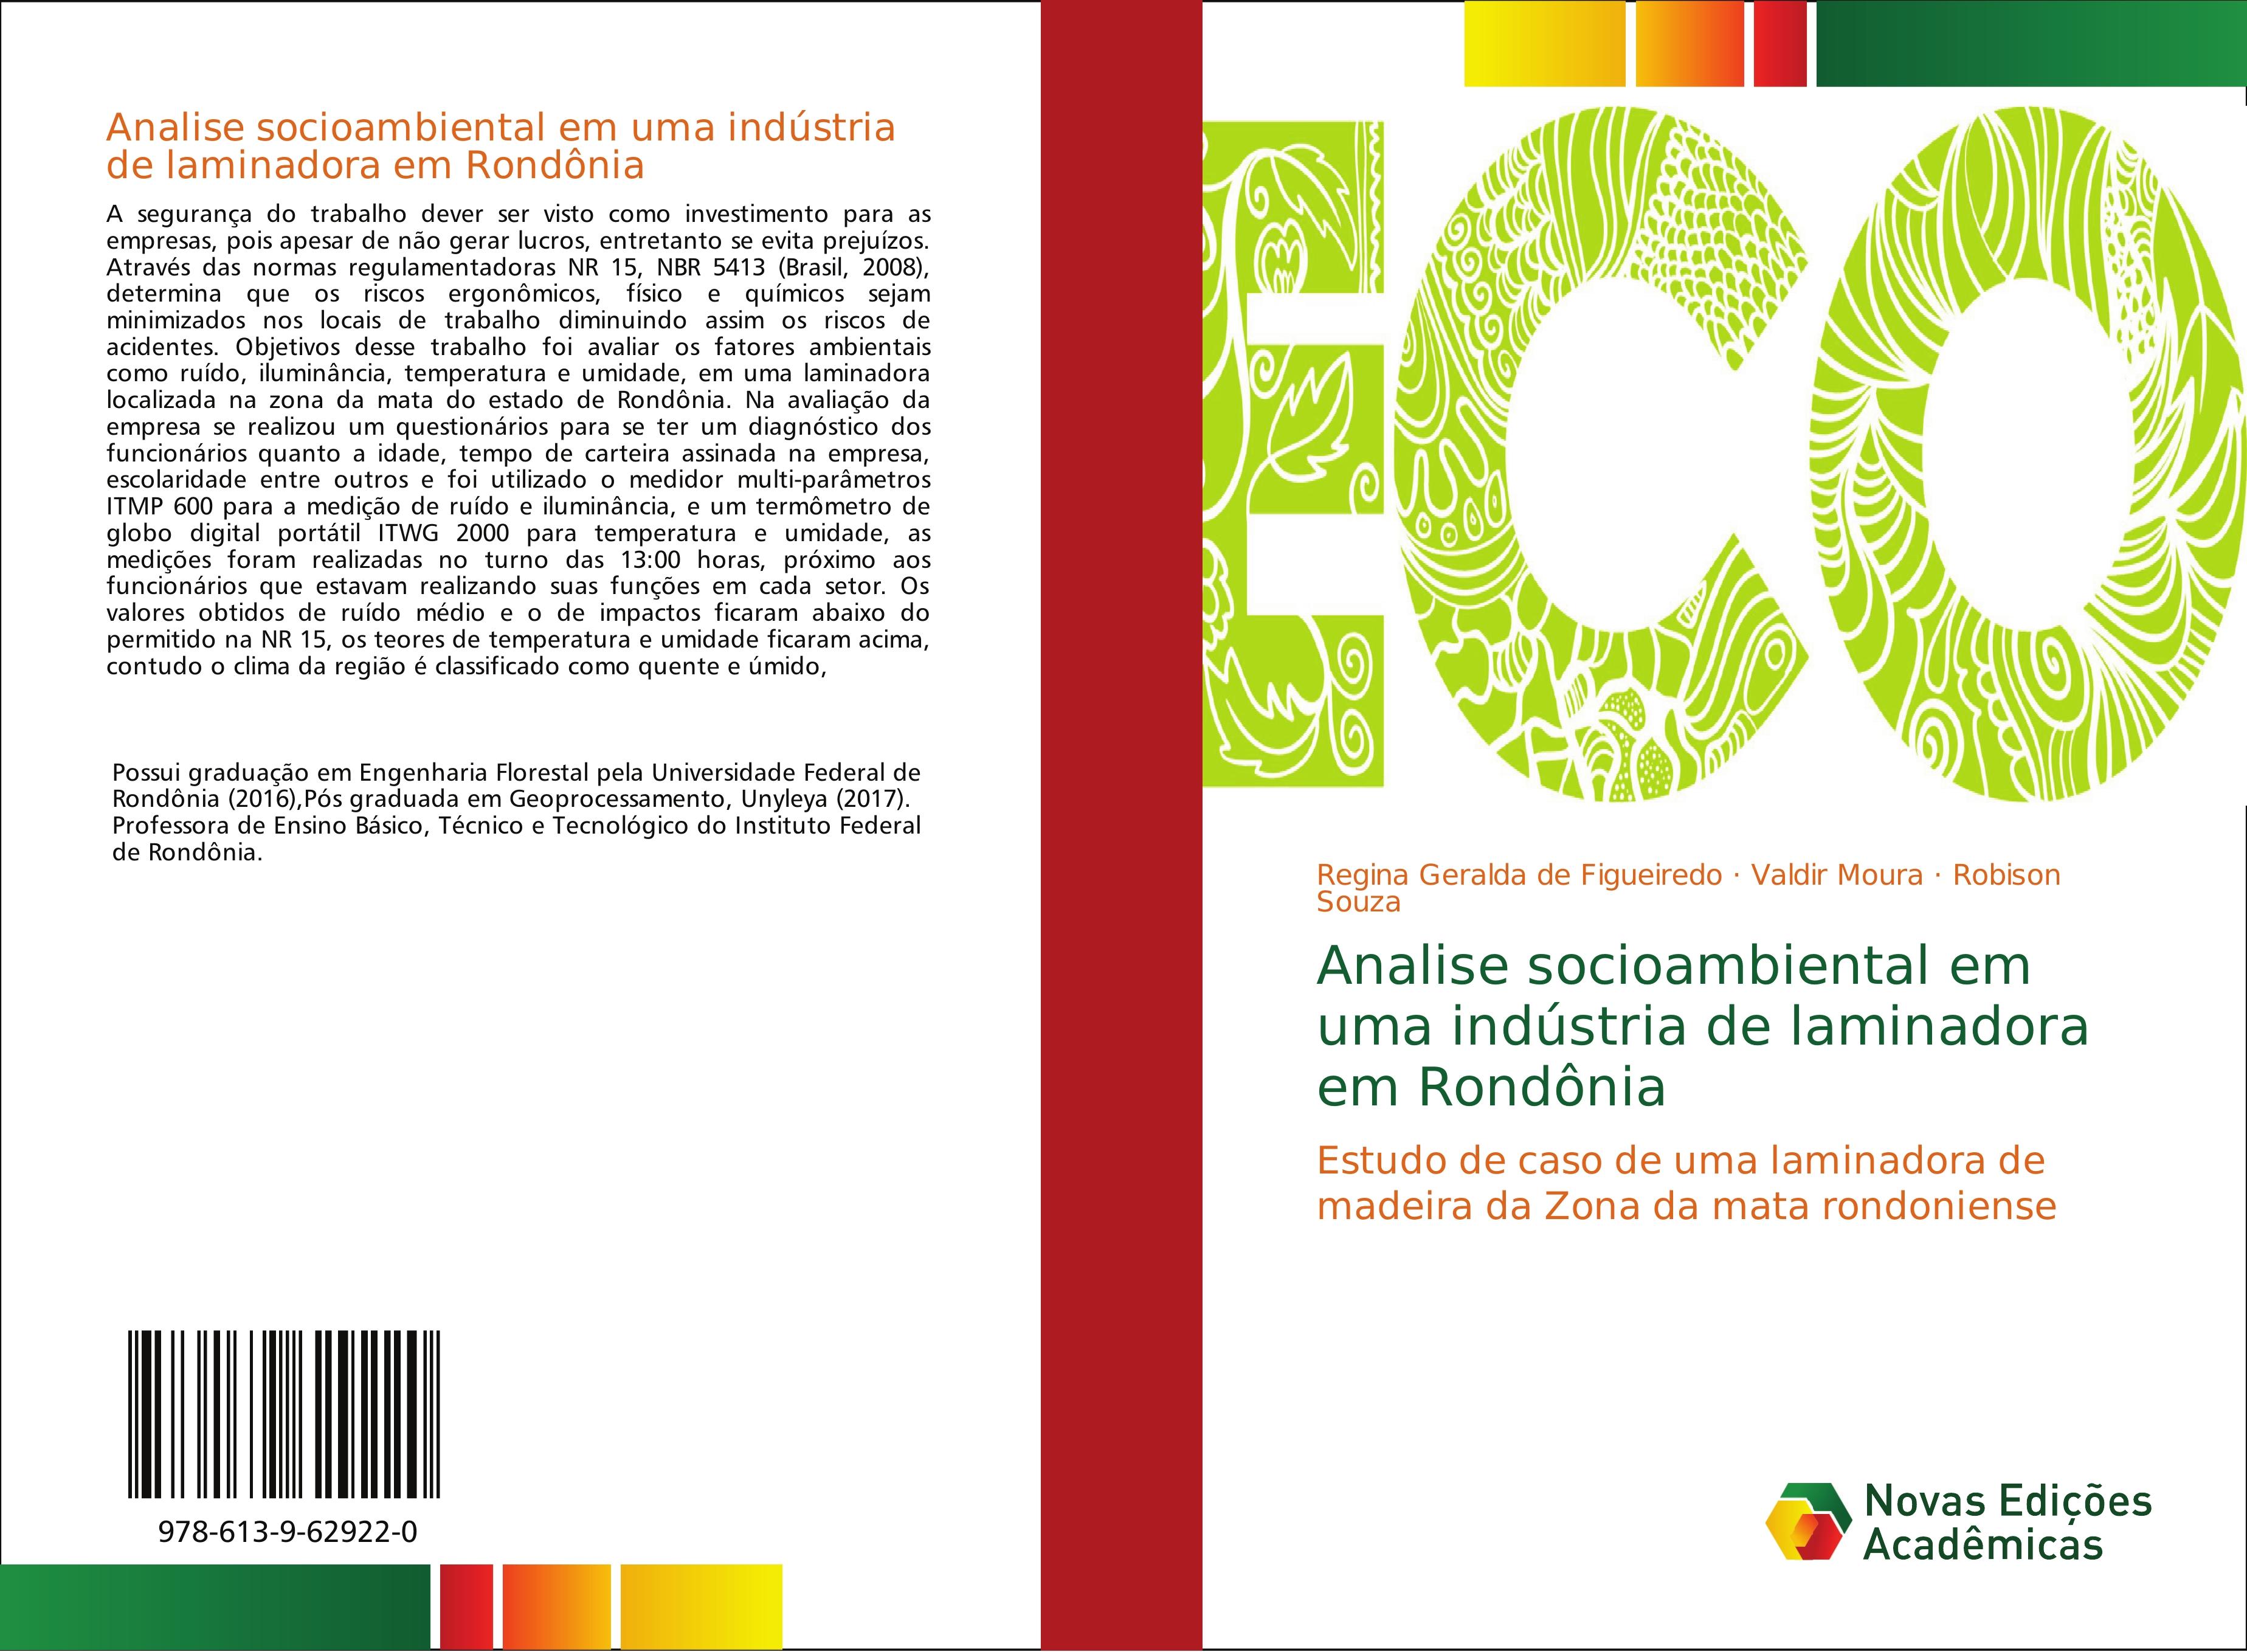 Analise socioambiental em uma indústria de laminadora em Rondônia - Geralda de Figueiredo, Regina Moura, Valdir Souza, Robison